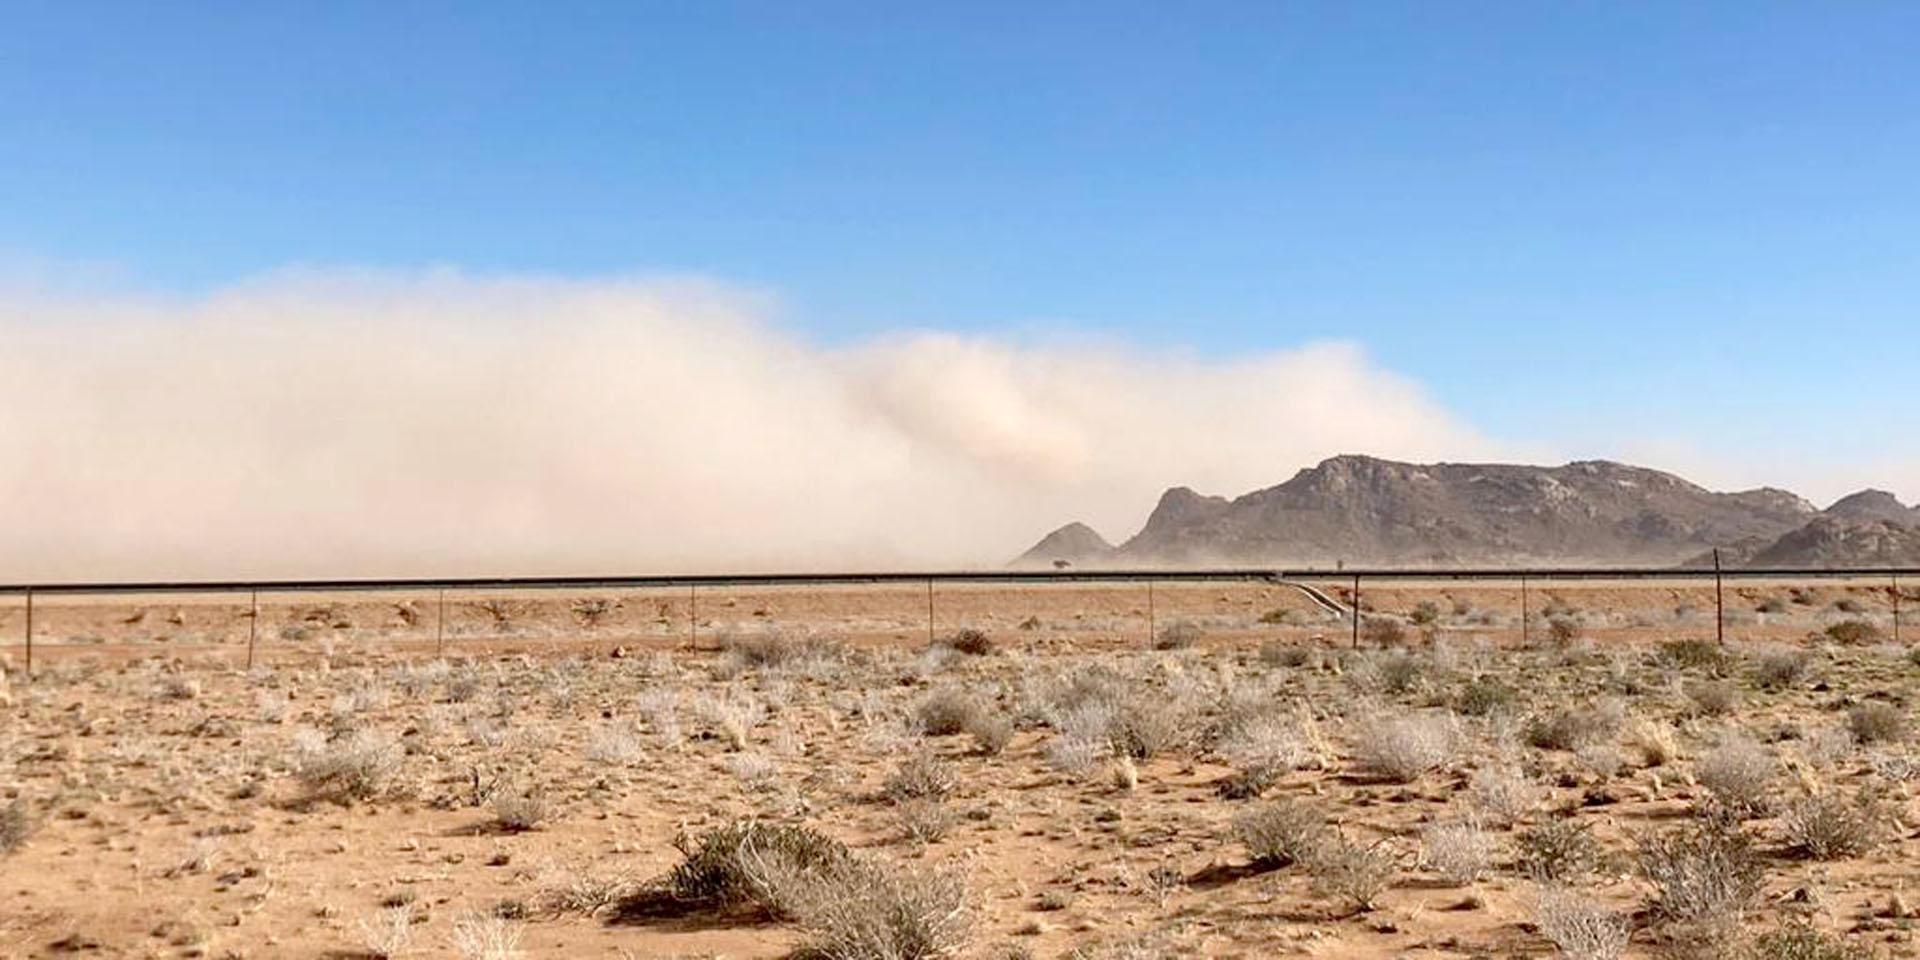 Aufräumen nach heftigem Sandsturm in der Namib-Wüste